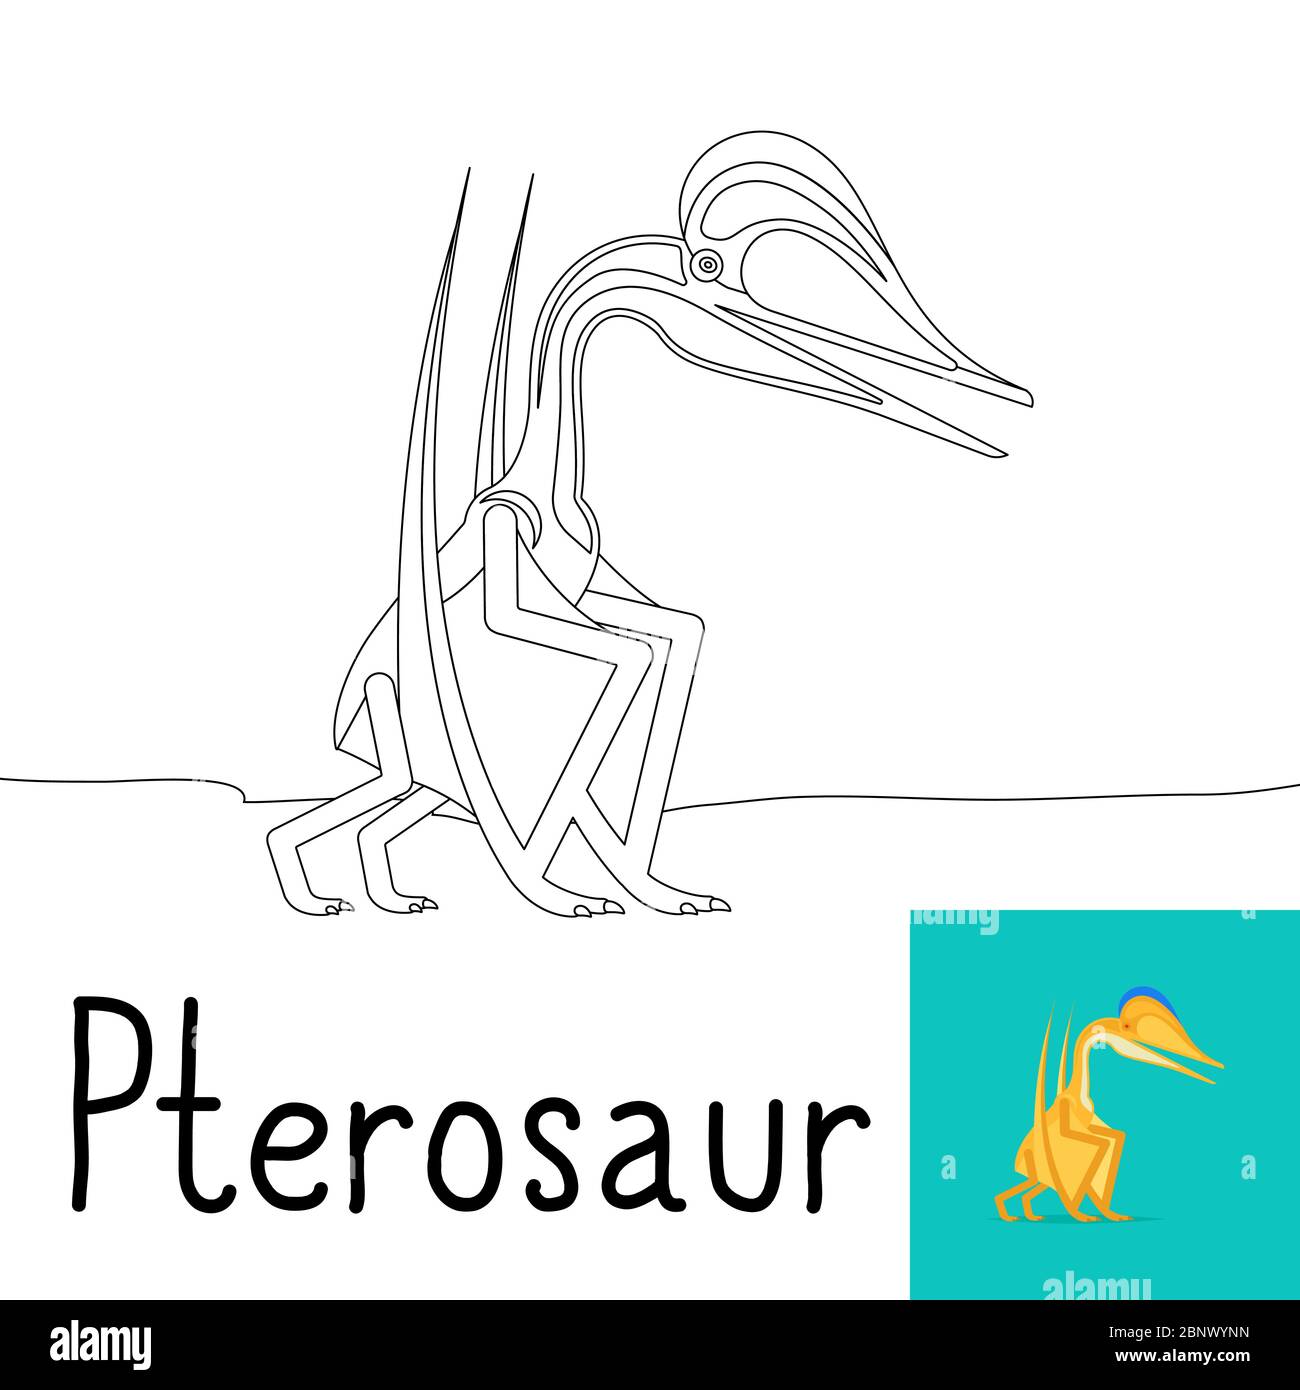 Pagina da colorare per bambini con dinosauro Pterosauro e anteprima colorata. Illustrazione vettoriale Illustrazione Vettoriale